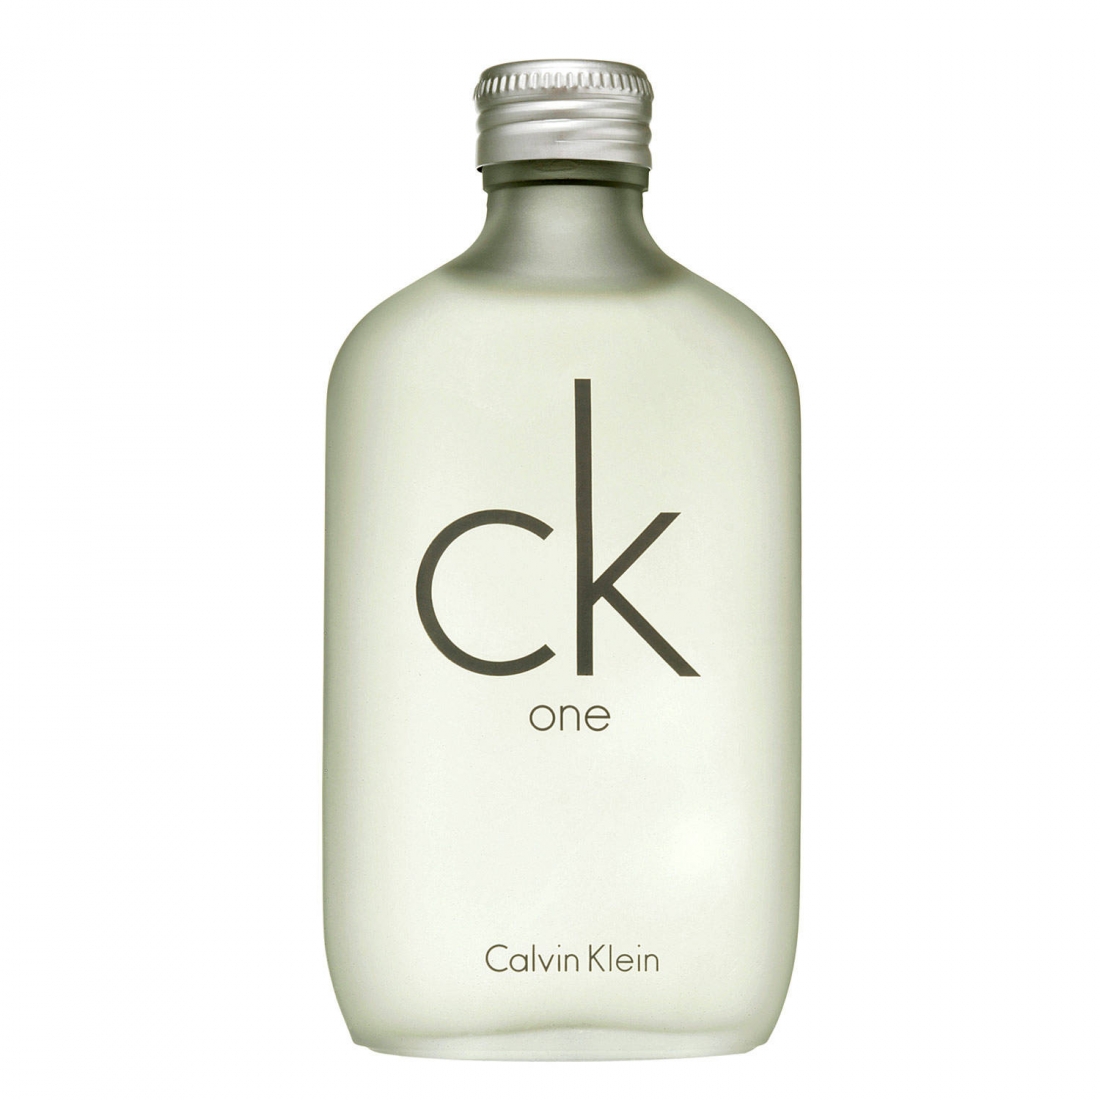 'CK One' Eau De Toilette - 100 ml